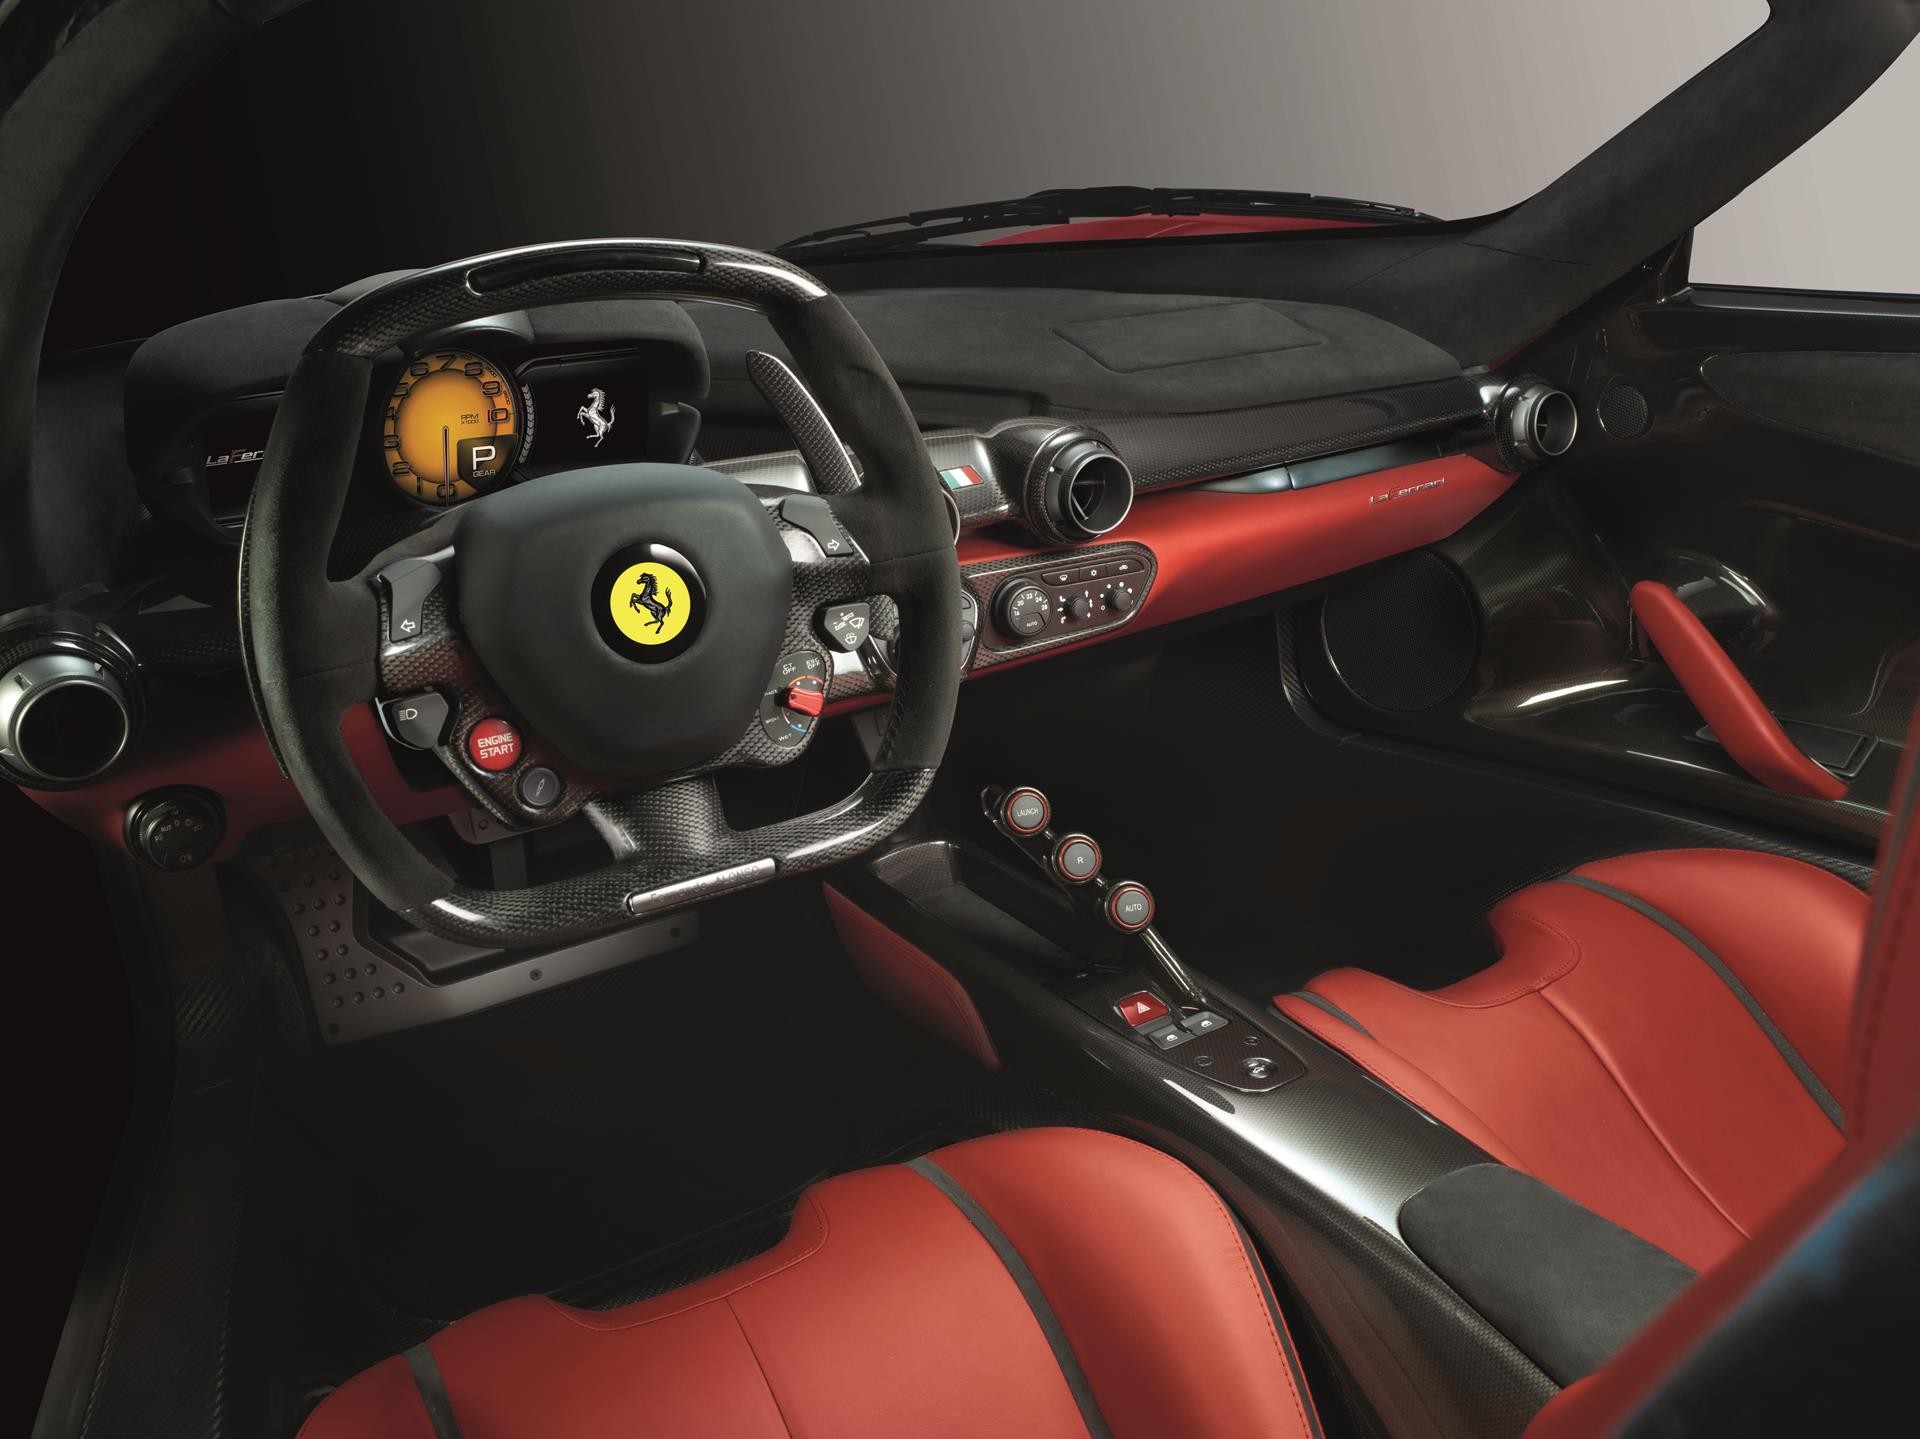 Ferrari Laferrari Supercar 2016 I01, Wallpaper, Hd, - Ferrari Laferrari Interior , HD Wallpaper & Backgrounds